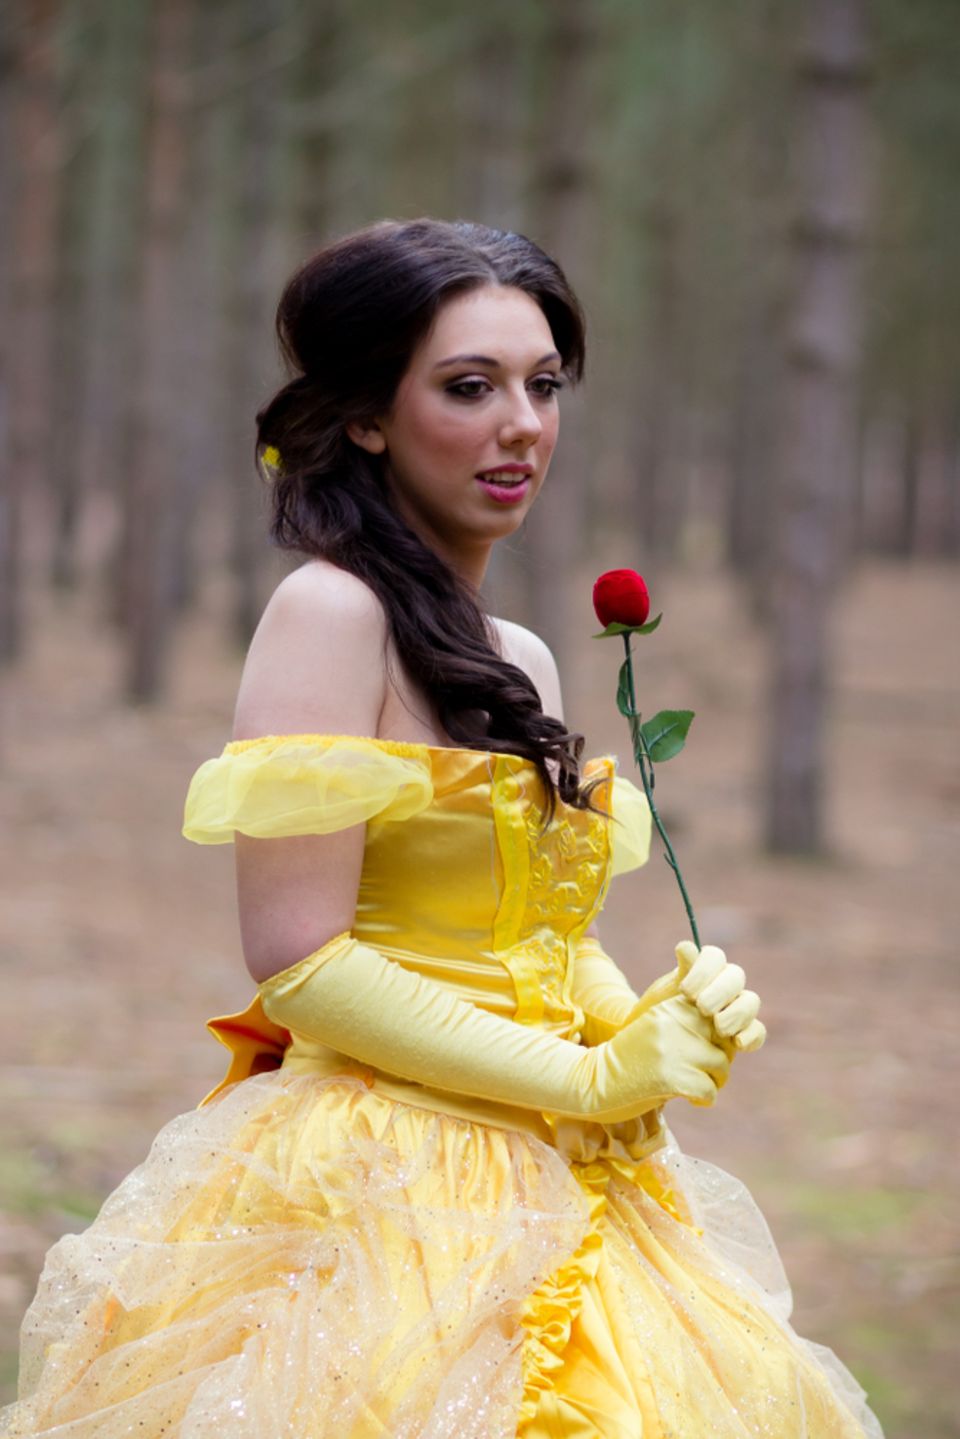 Childhood Heroes: Woman dressed as Belle